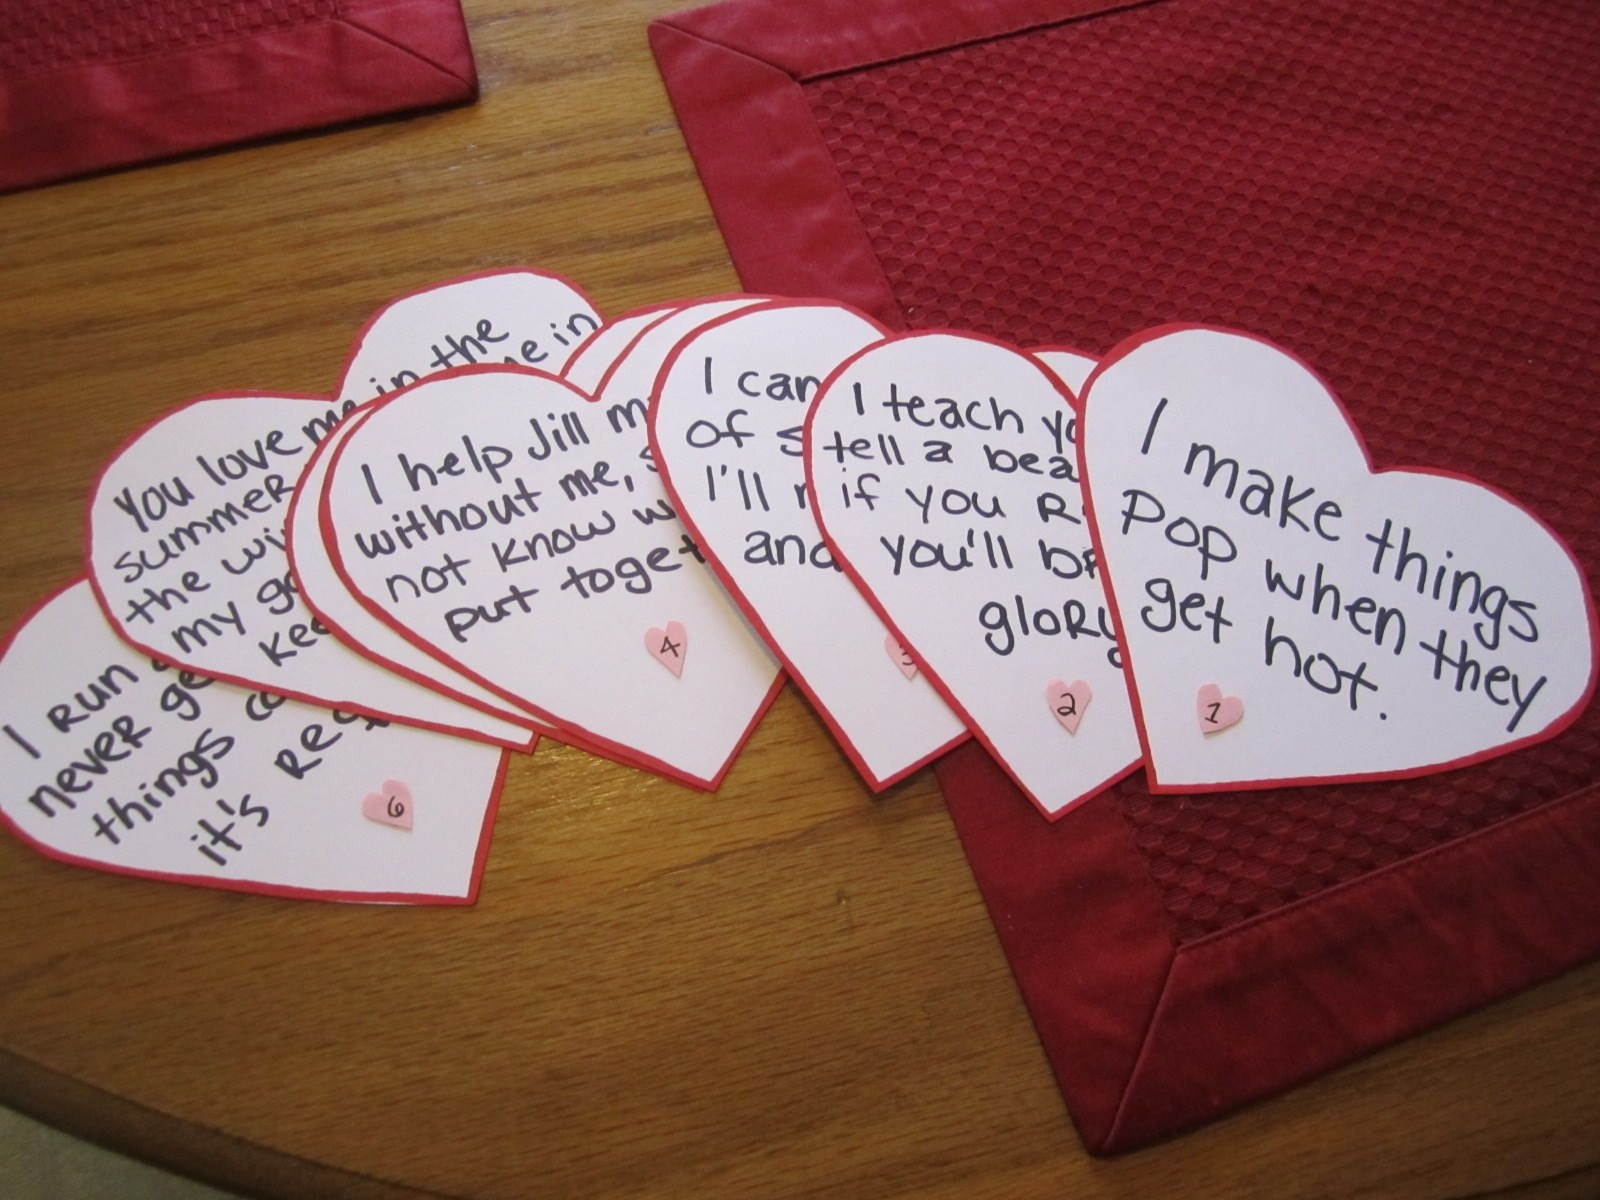 Creative Valentines Day Gift For Boyfriend
 Unique Christmas Gifts for Boyfriend Creative Maxx Ideas